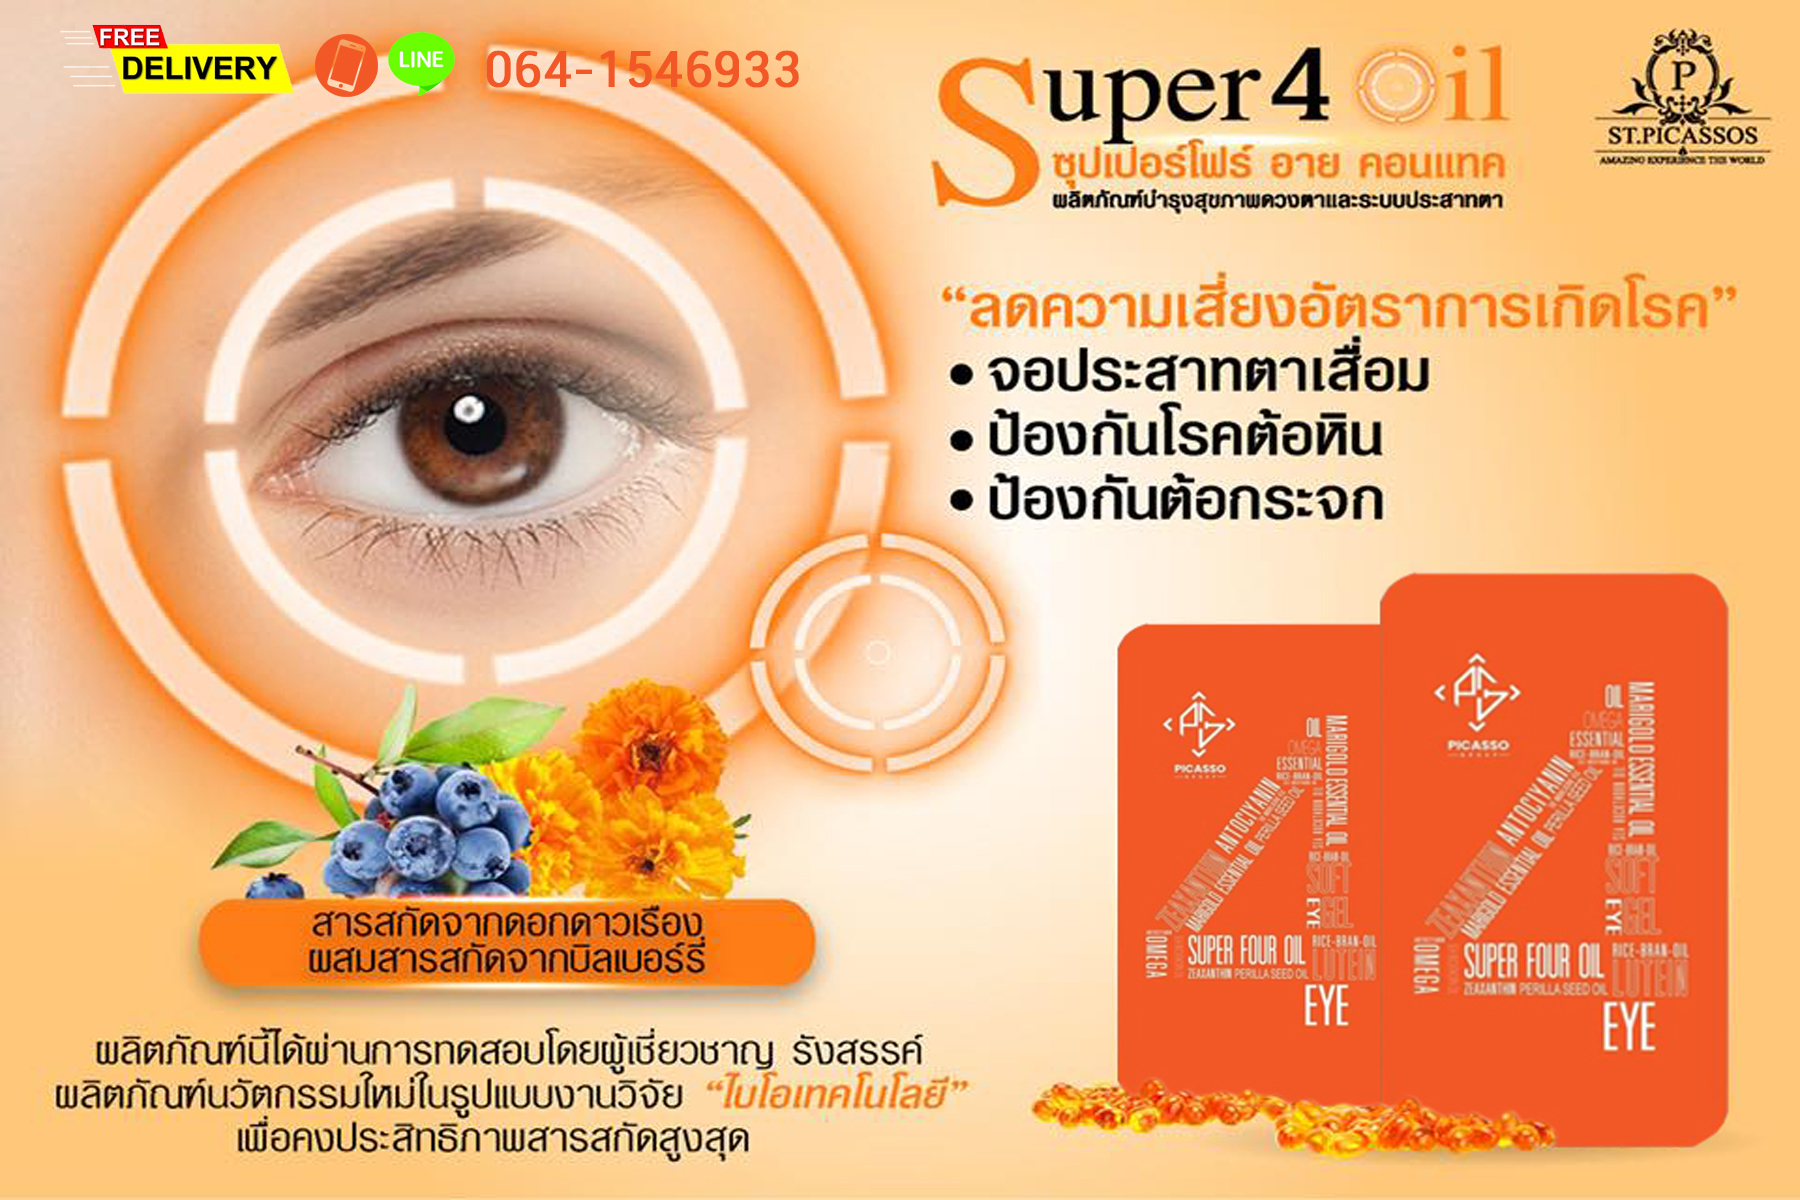 Super Four S4 อาหารเสริมสุขภาพดวงตา สายตา และประสาทตา